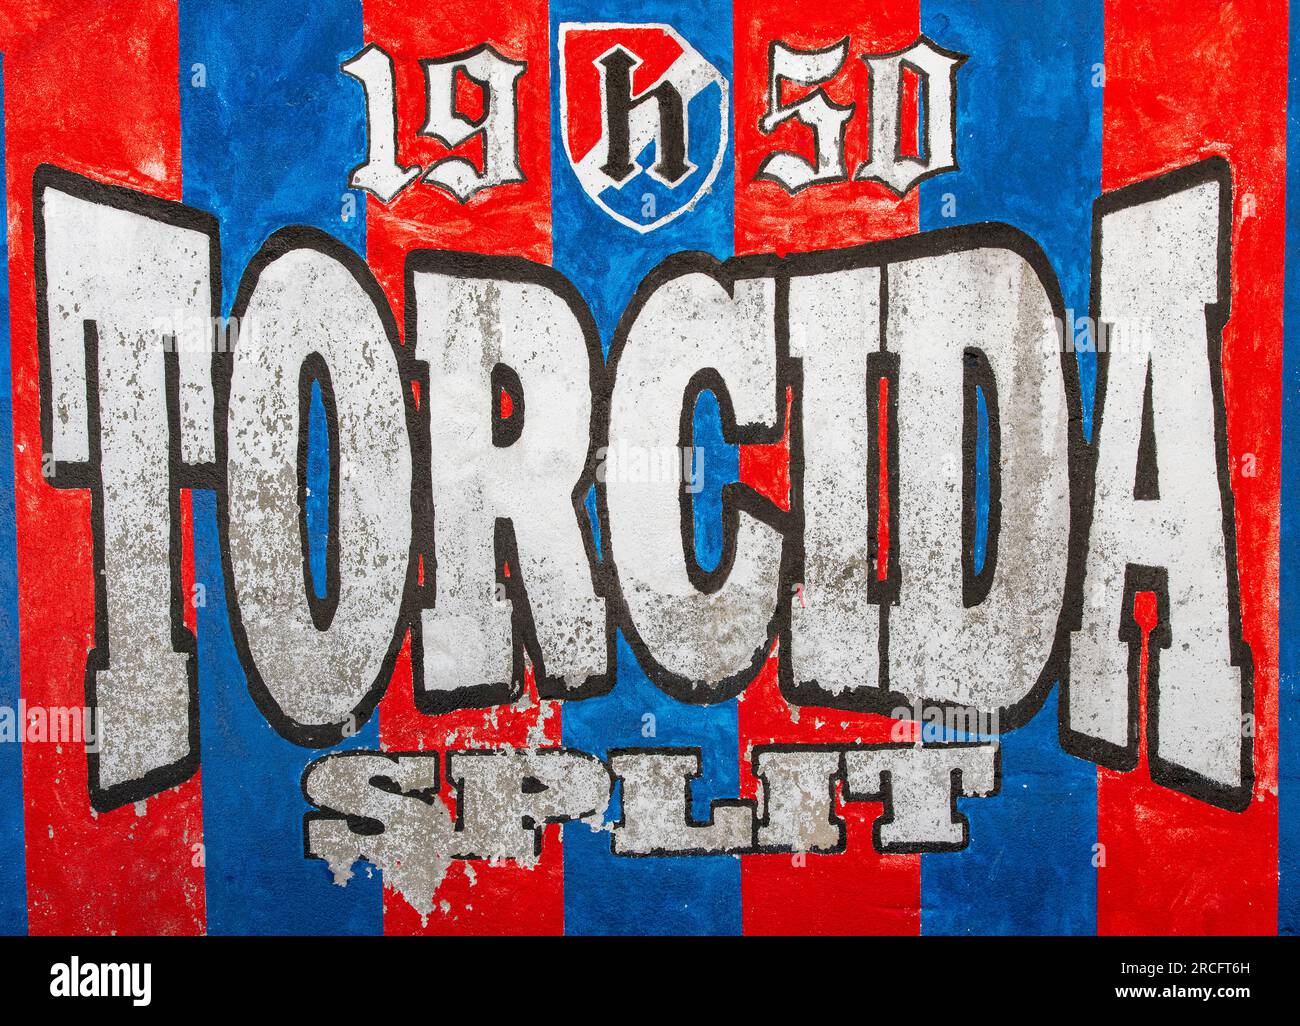 Hajduk Split Tasse 